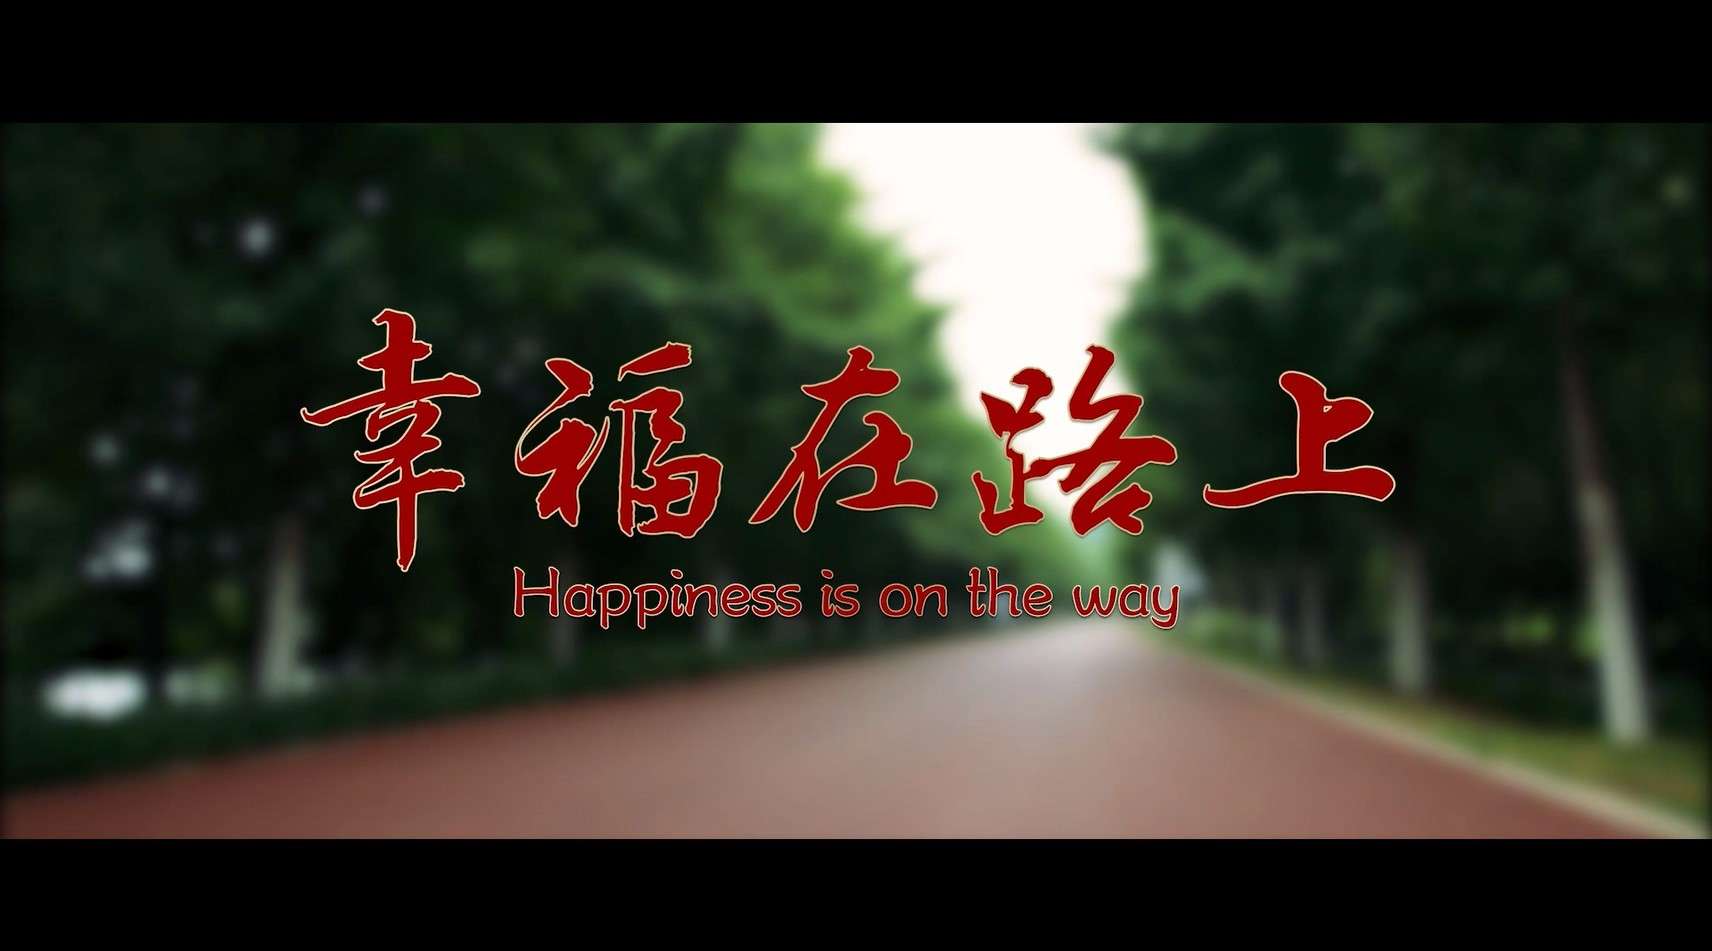 微电影《幸福在路上》